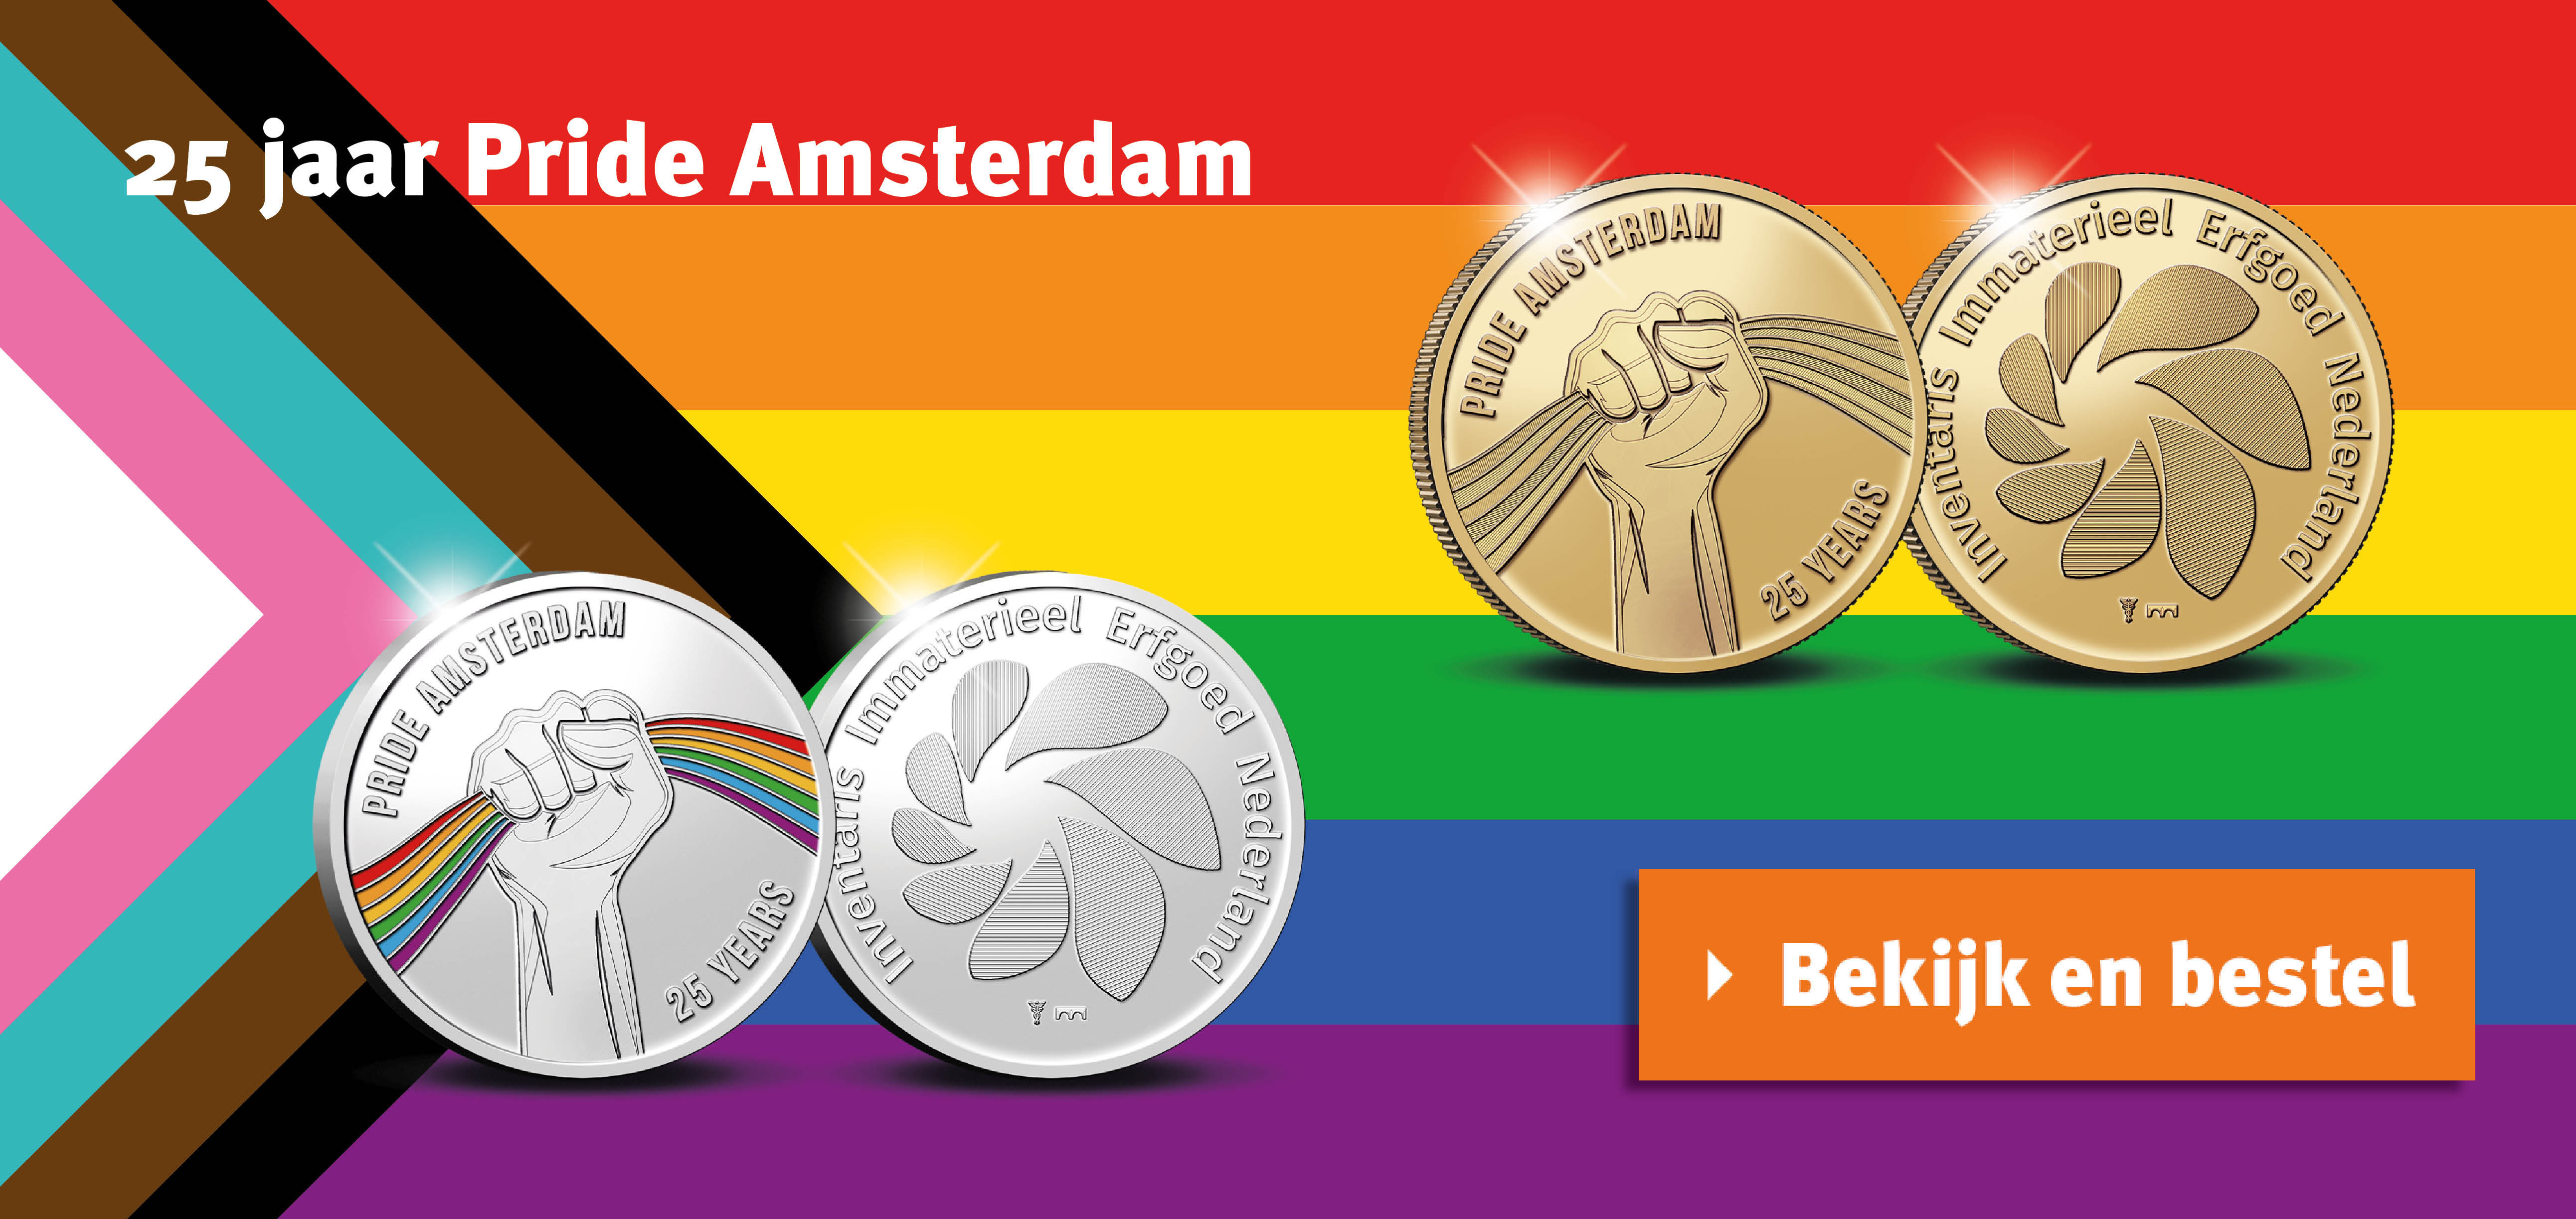 Bekijk en bestel: 25 jaar Pride Amsterdam